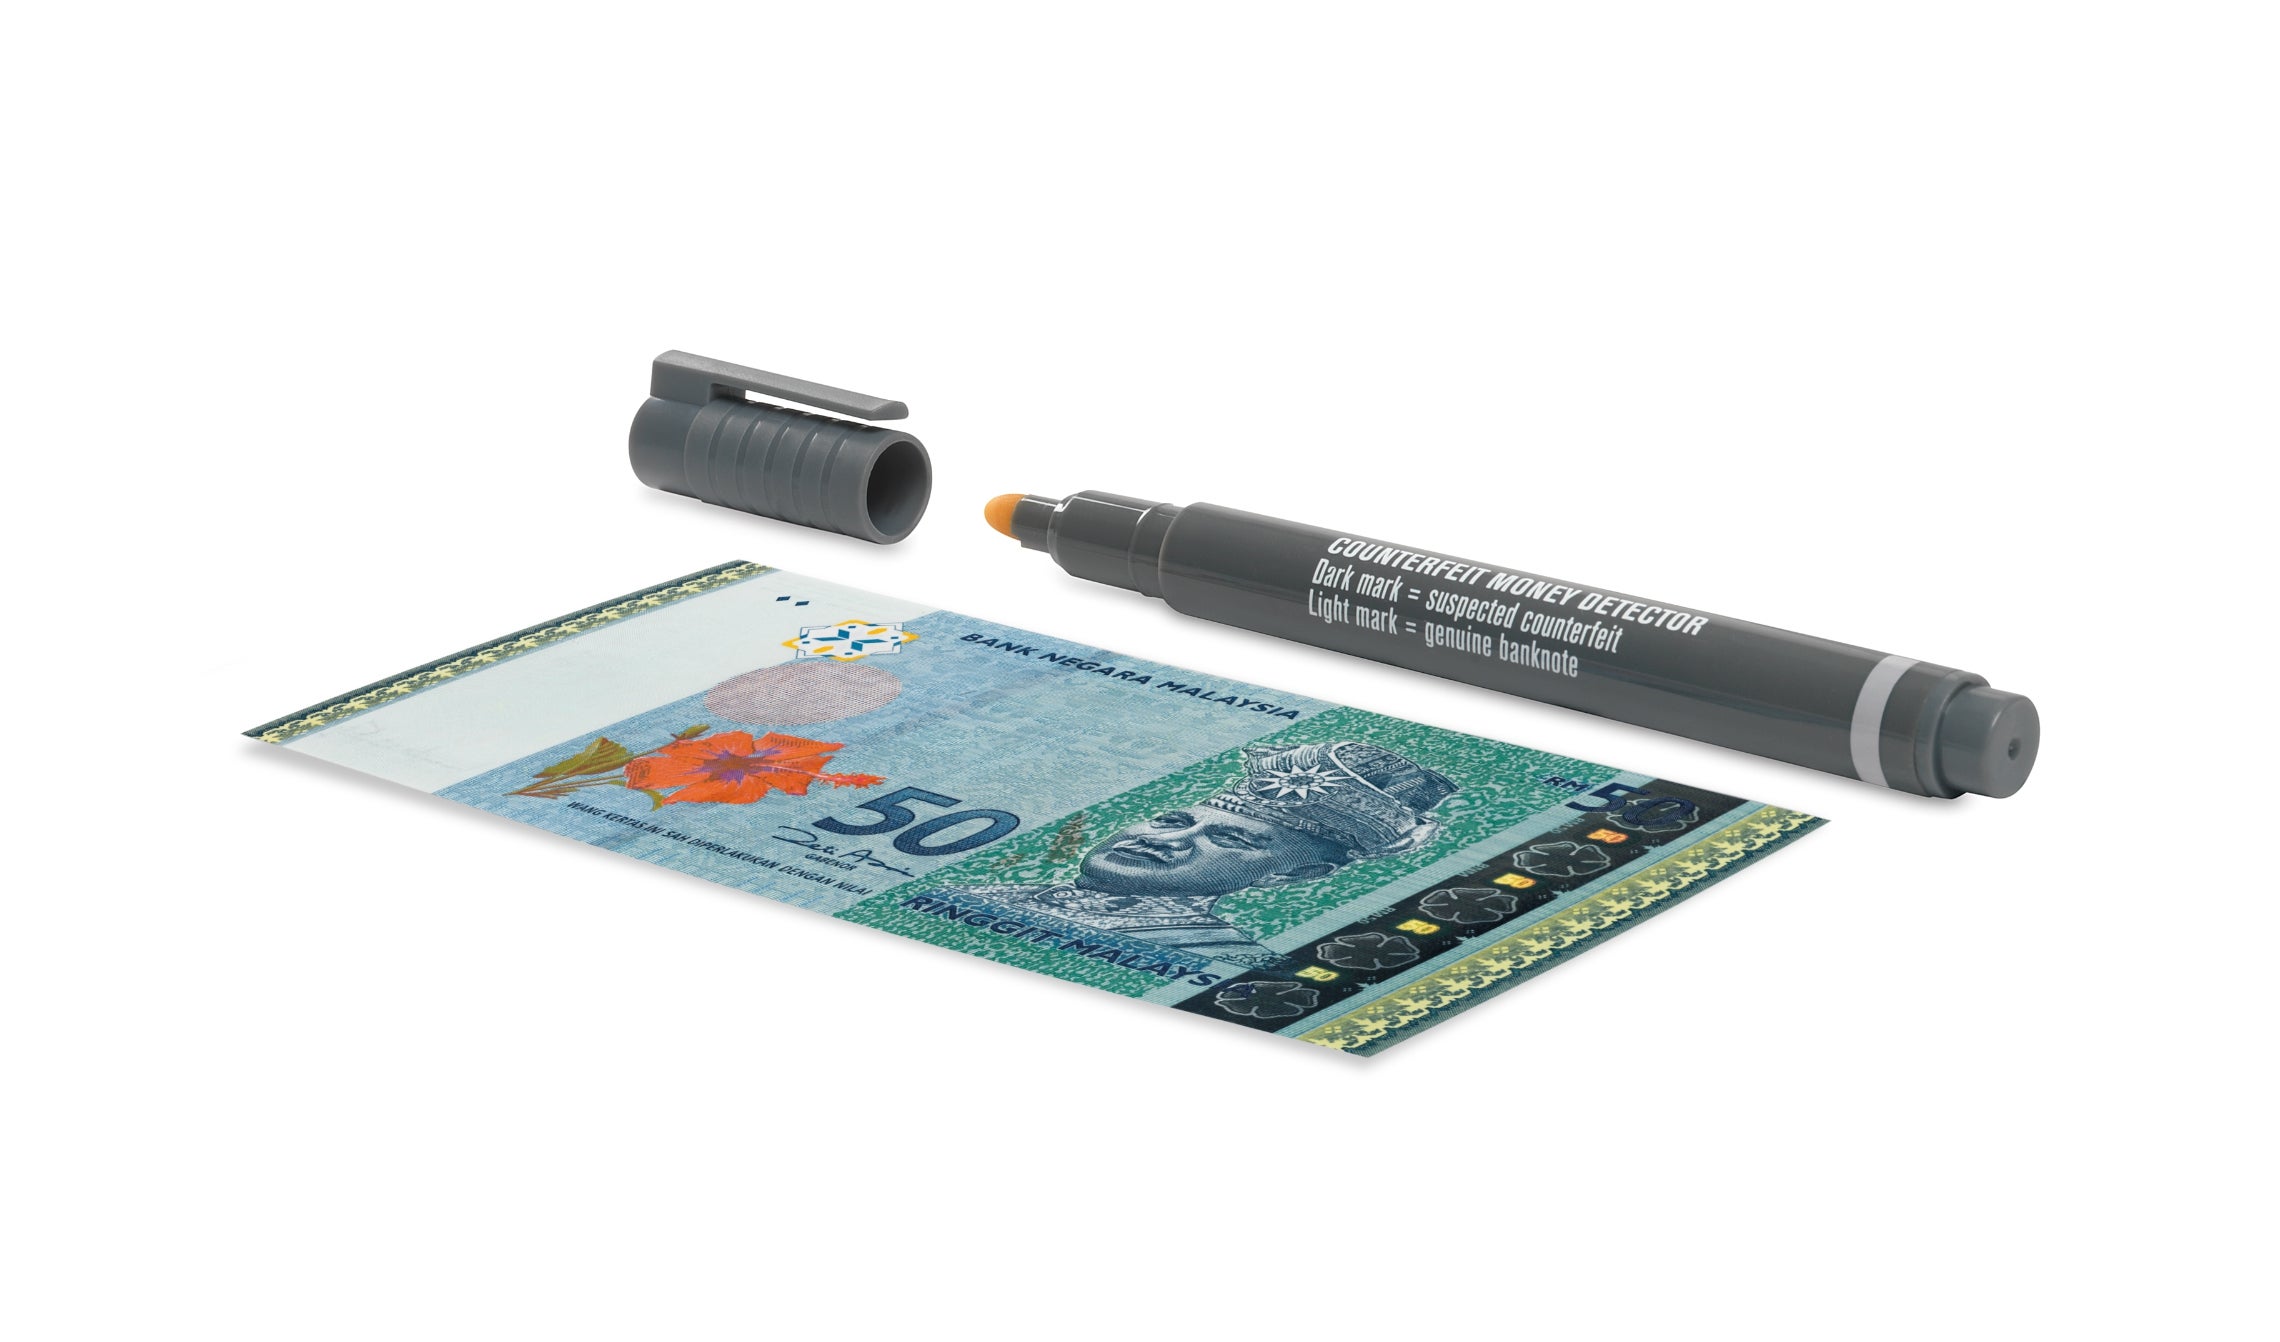 safescan-30-counterfeit-detection-pen